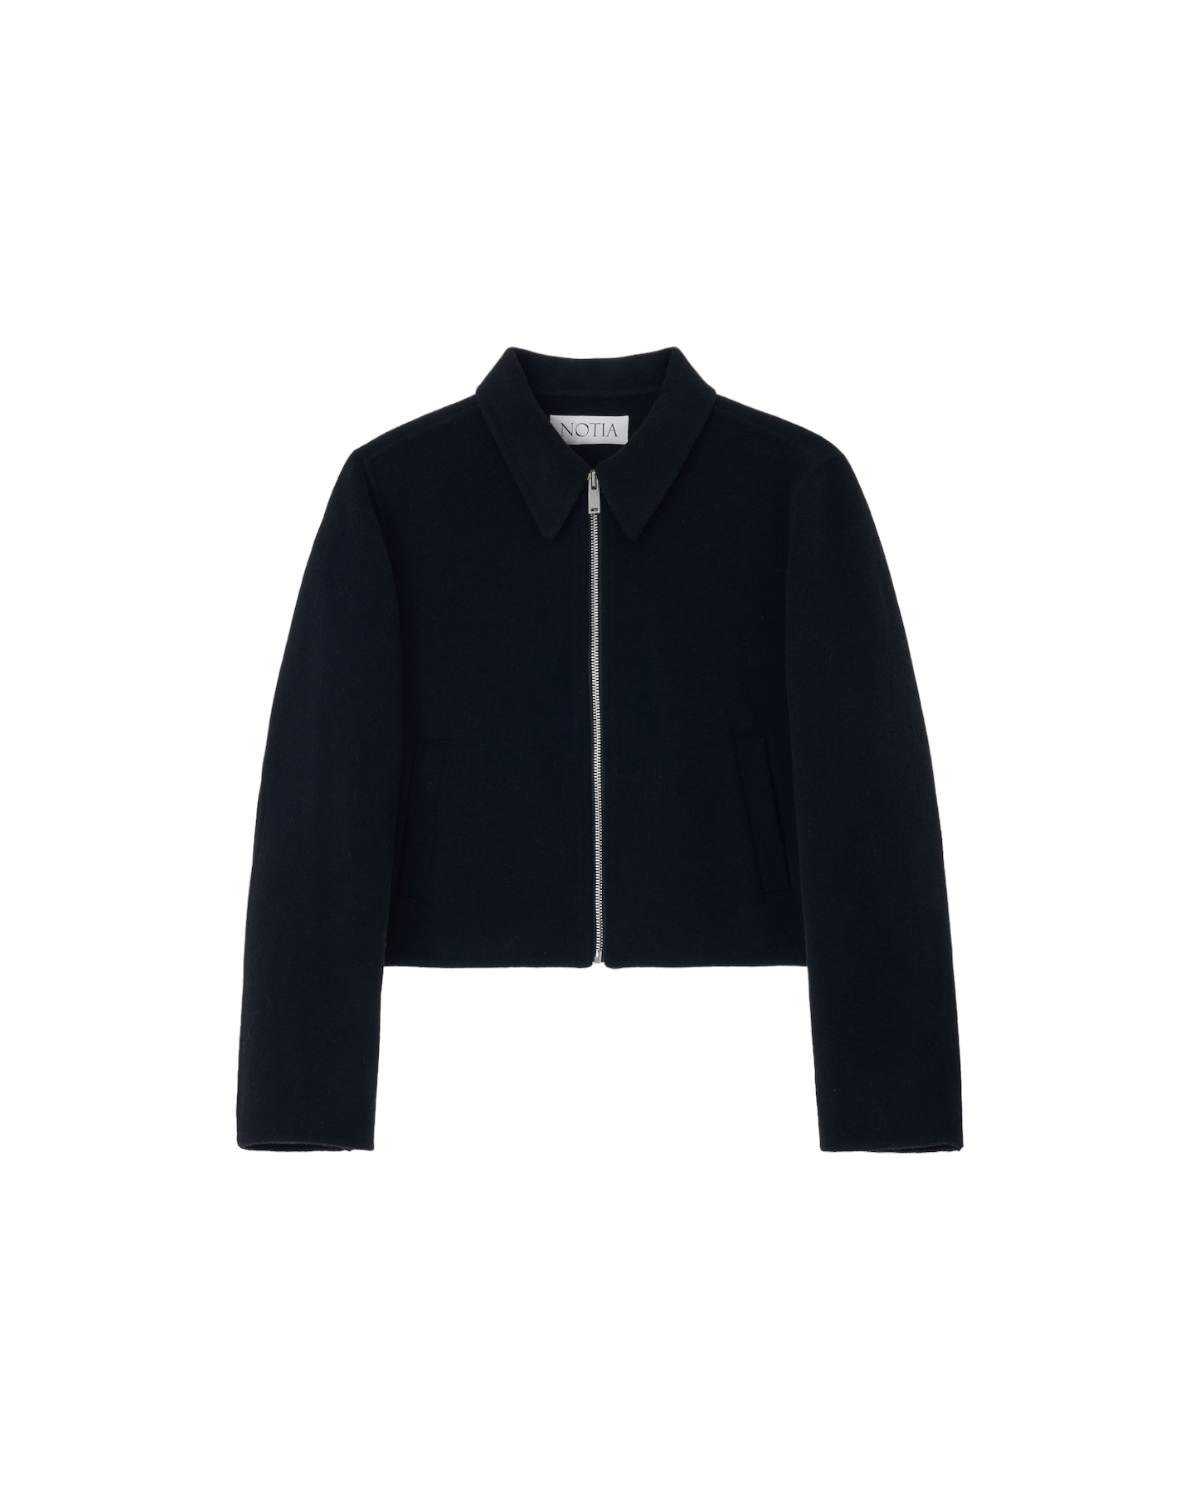 Wool Handmade Zip-up Jacket In Black